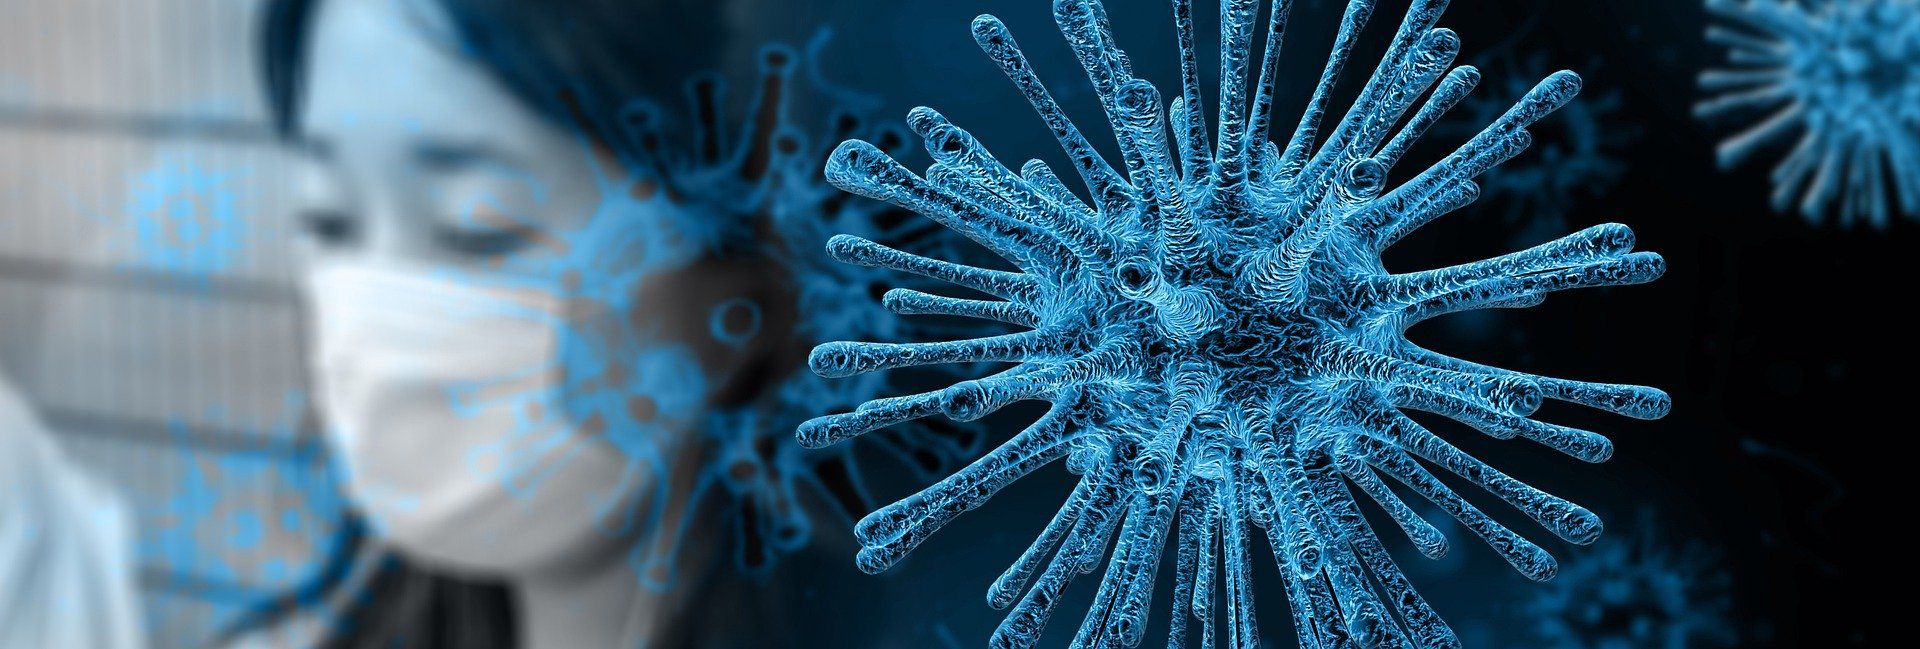 Coronavirus (Covid-19) – La tecnología contra ataca.